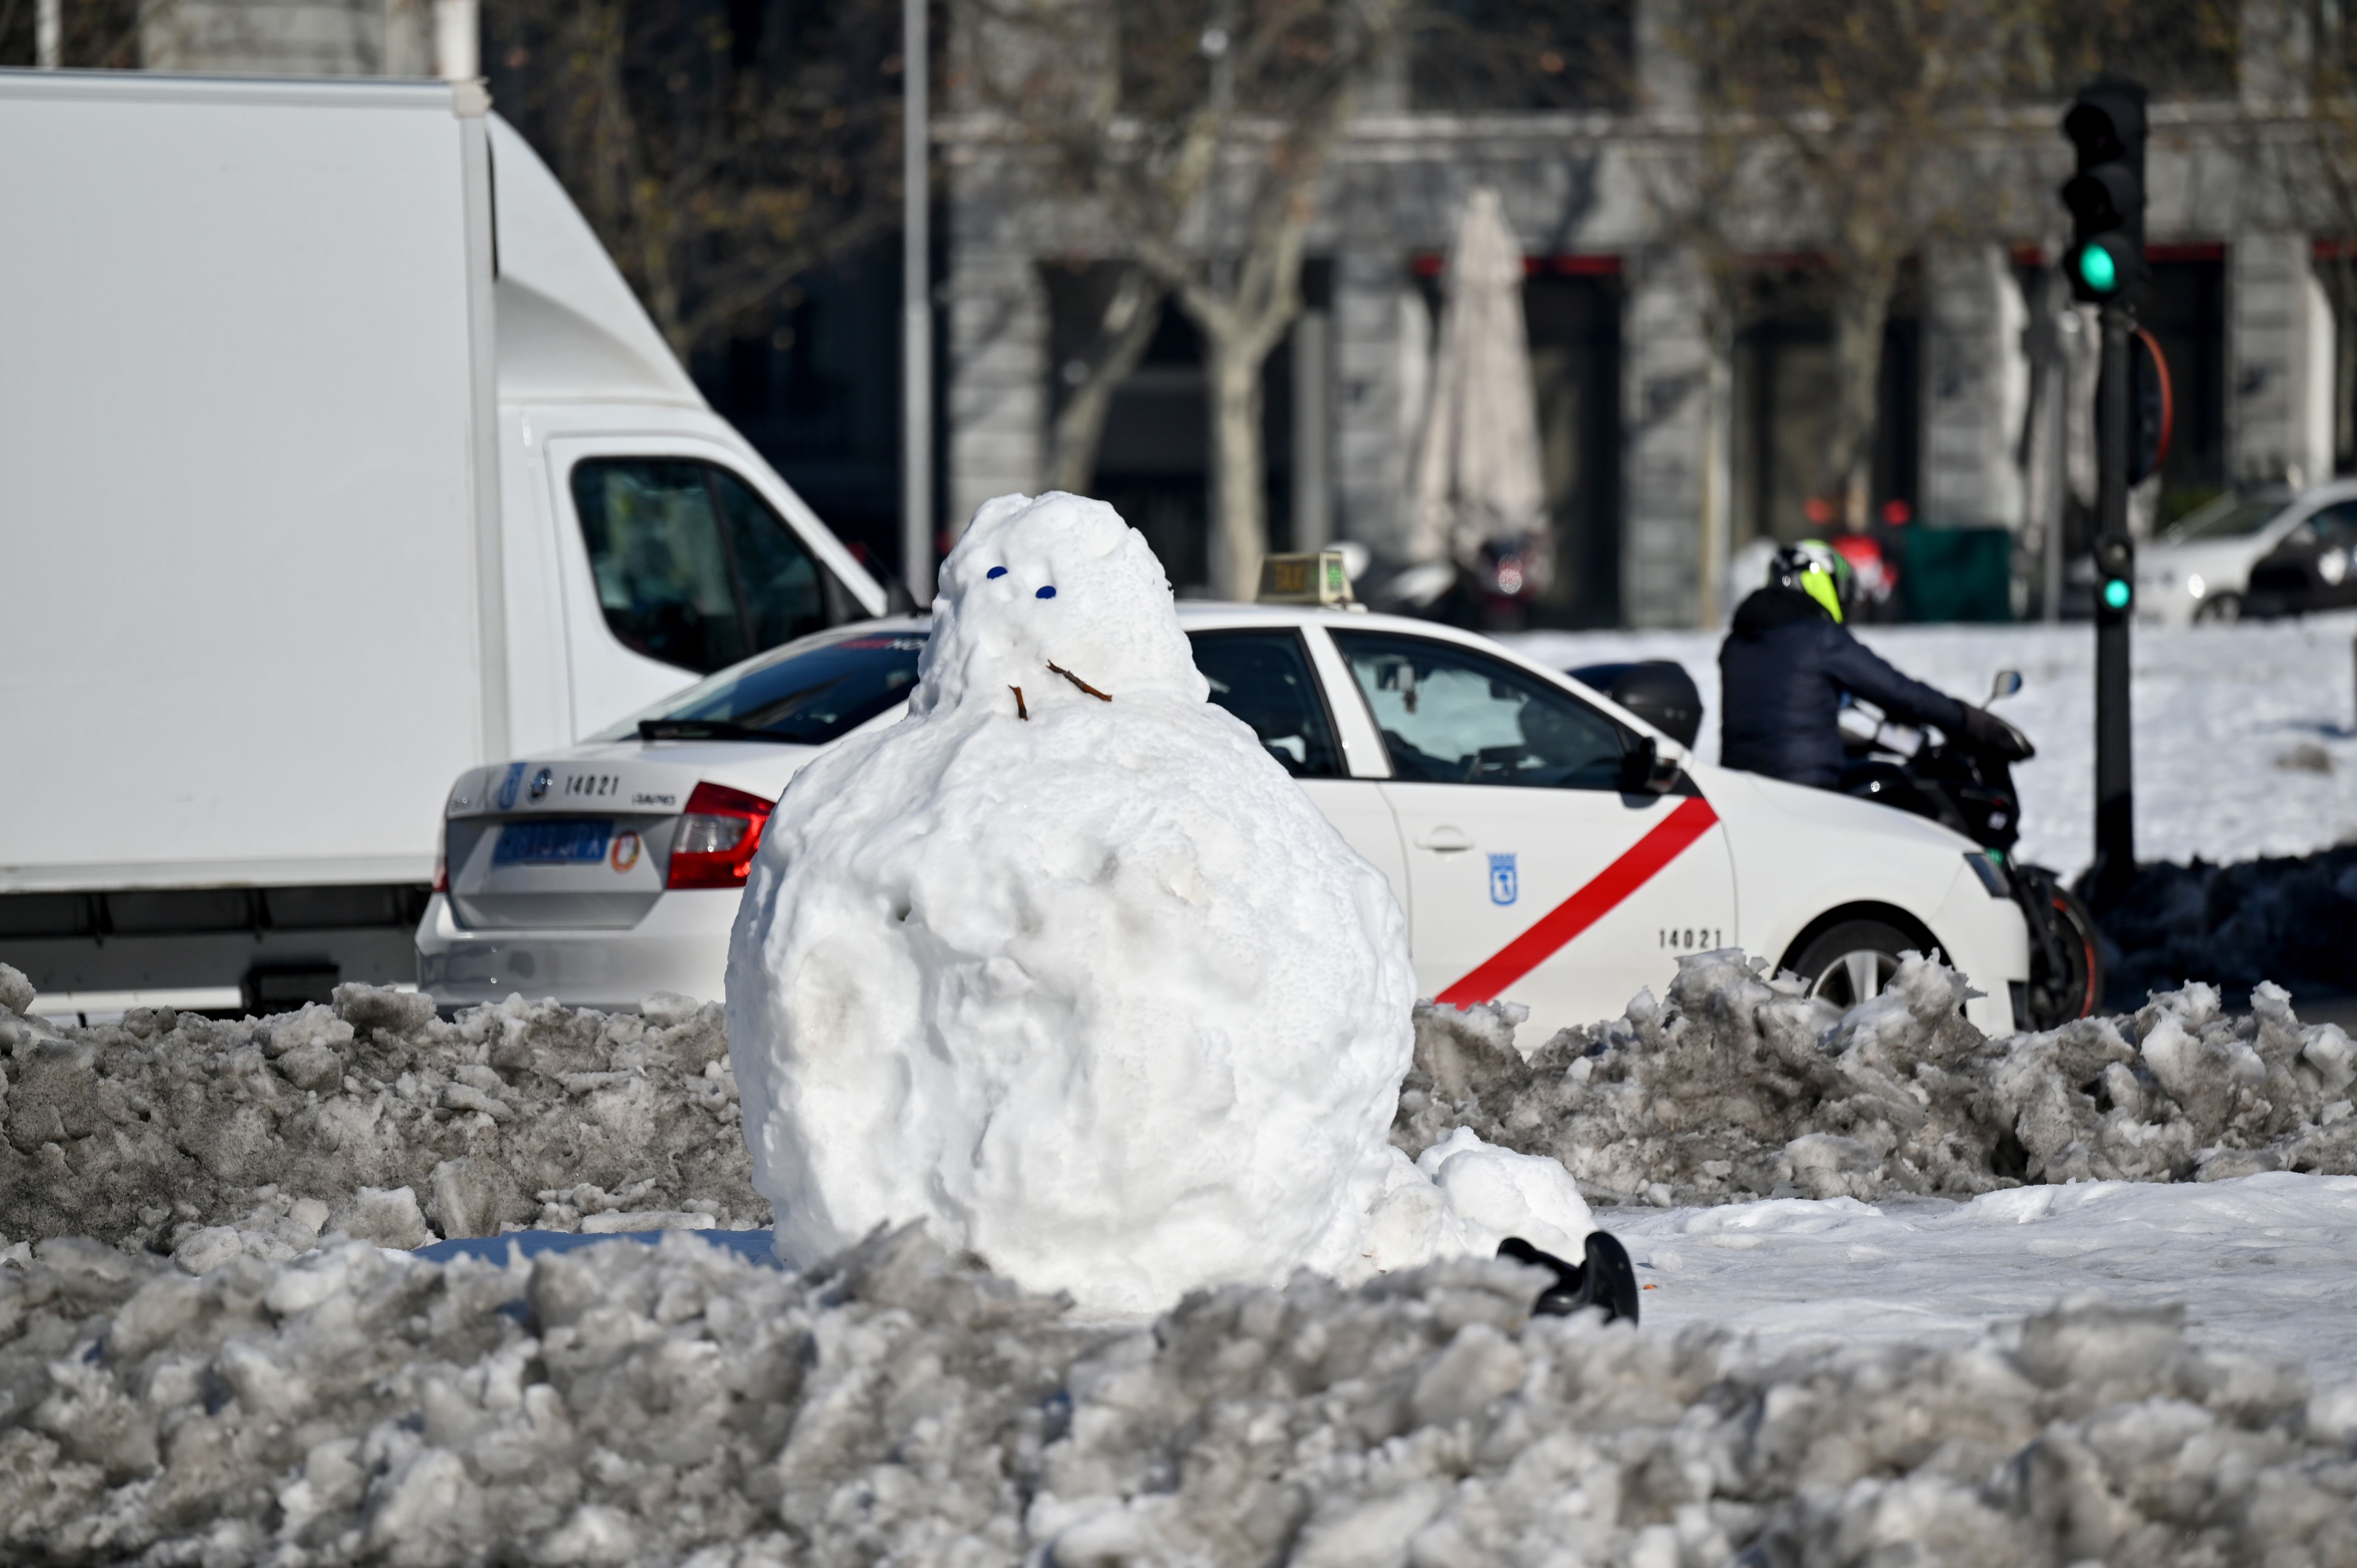 Mueco de nieve en una calle de Madrid.